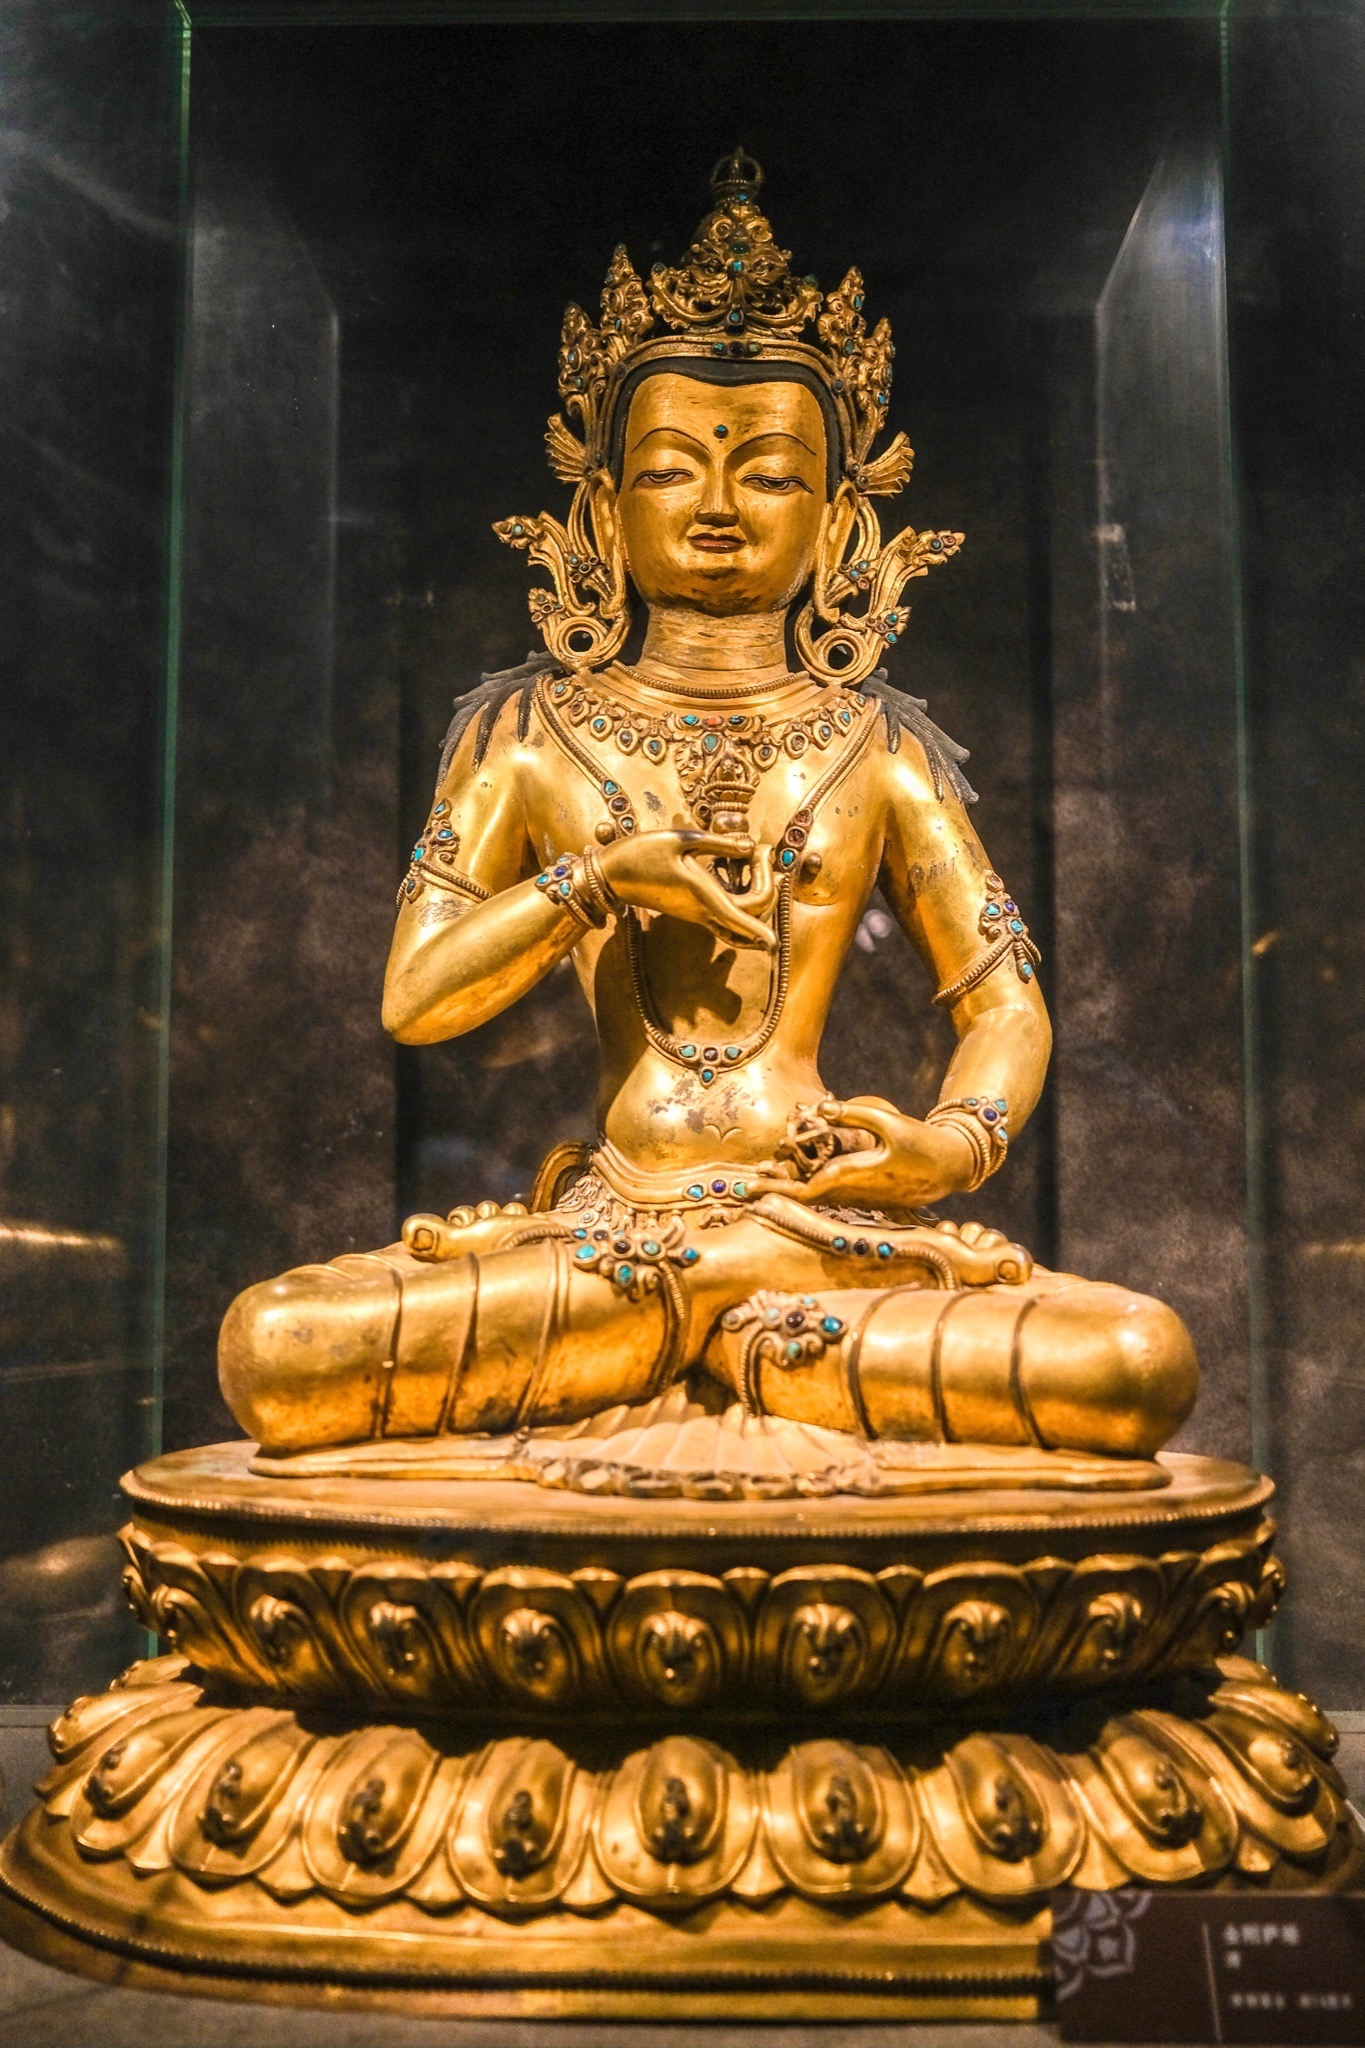 对佛教的认识，来了这里，才会让你得到升华，在二楼的展厅里展示着私人捐赠的藏品——各个朝代的佛像雕塑。